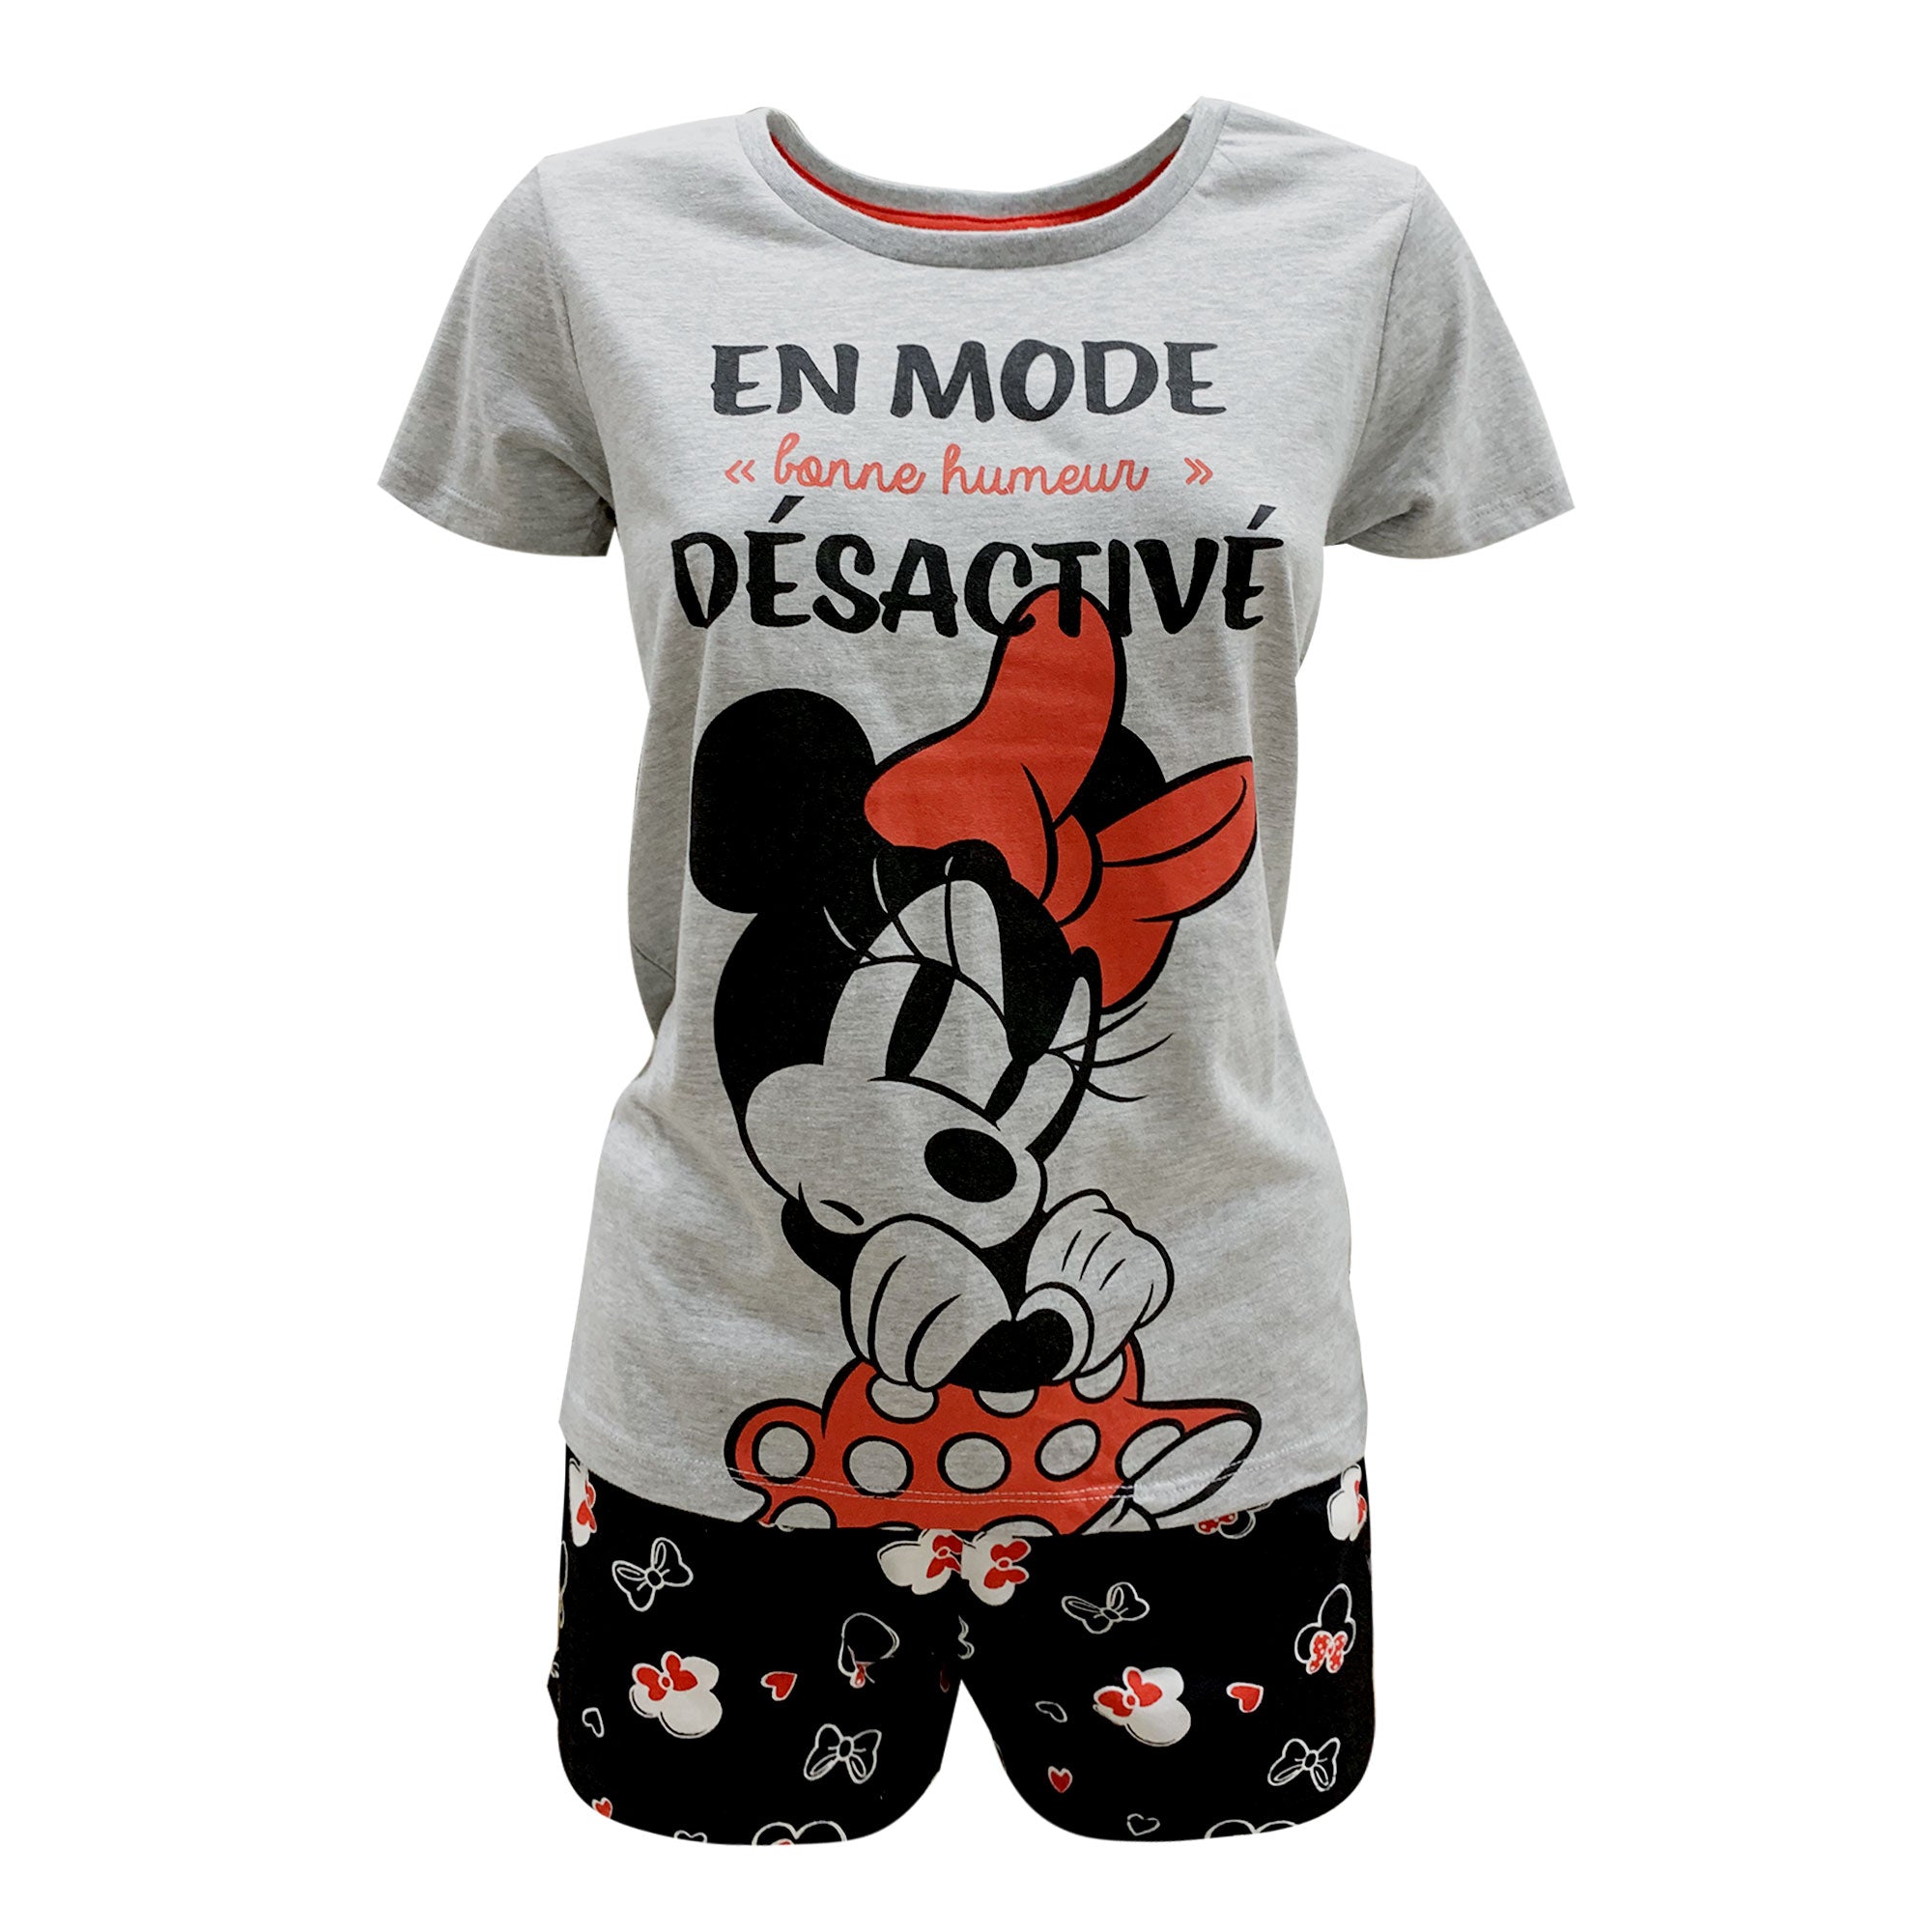 Pigiama corto donna Disney Minnie Mouse in cotone estivo